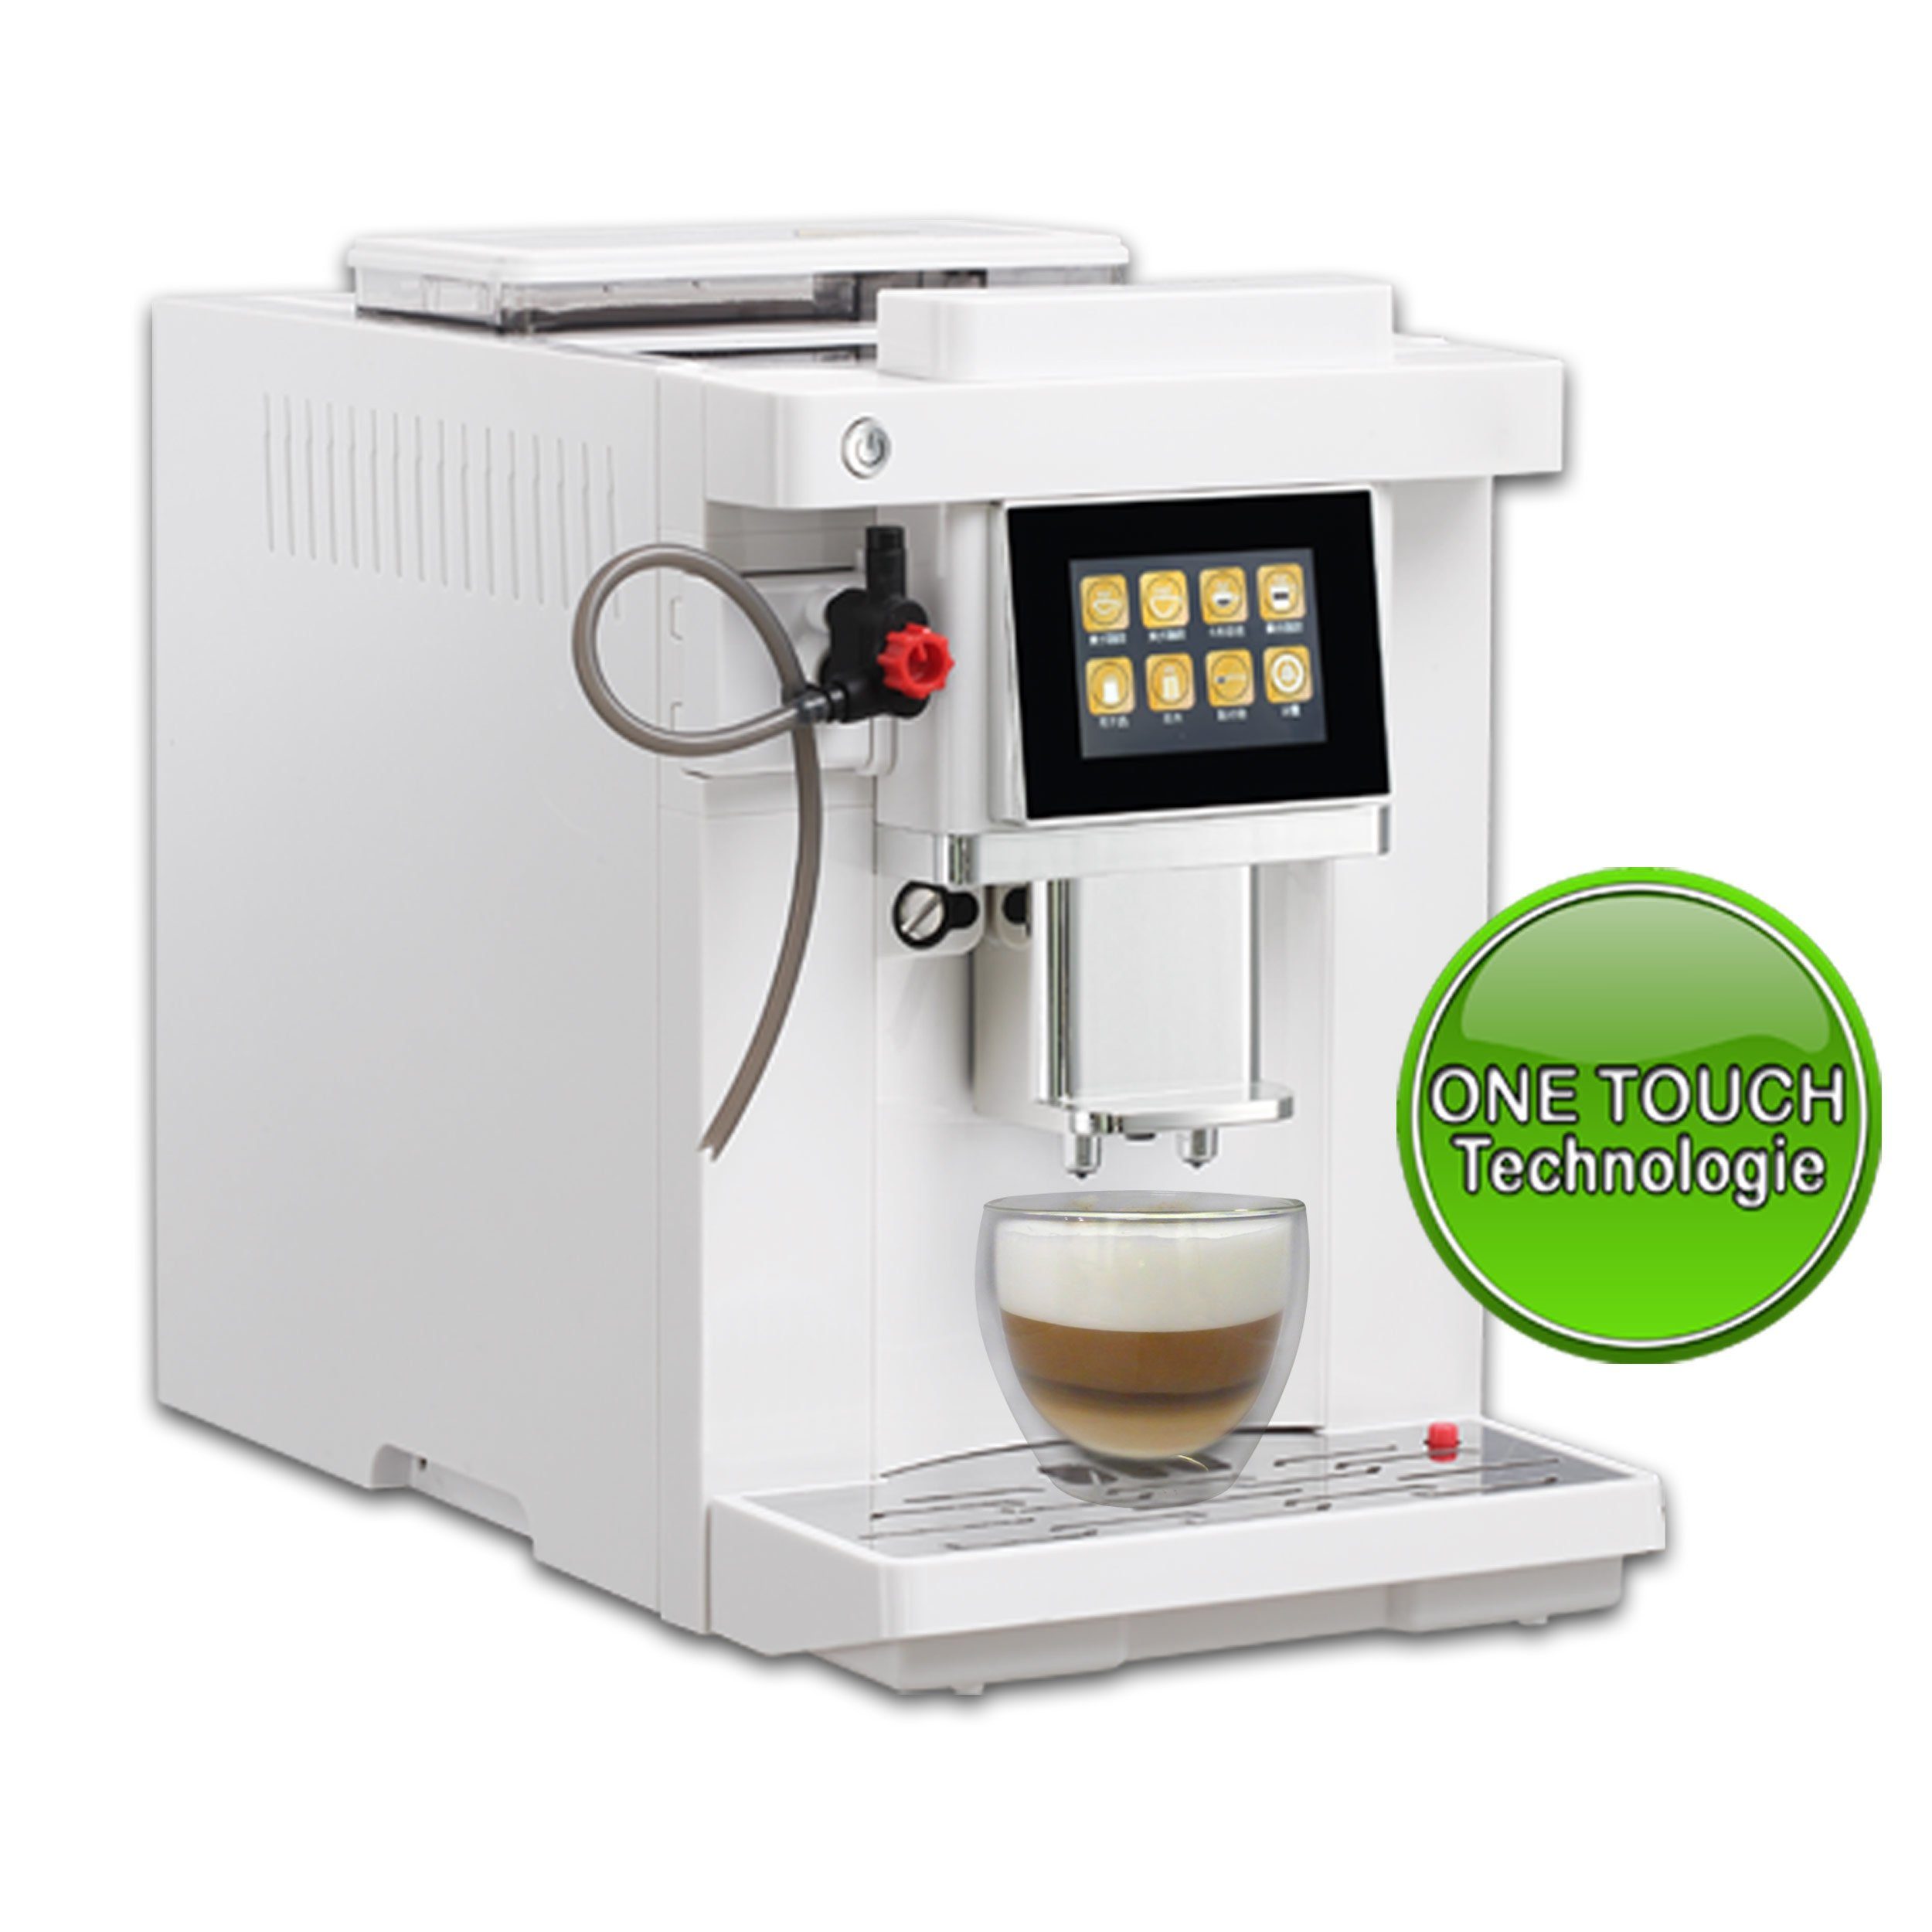 Acopino Kaffeevollautomat Roma One Touch Kaffeevollautomat mit Milchsystem,  Cappuccino und Espresso auf Knopfdruck, weiß, Herausnehmbare Brüheinheit,  einfache One Touch Bedienung, Selbstreinigung, Kegelmahlwerk,  programmierbare Getränkeeinstellungen ...